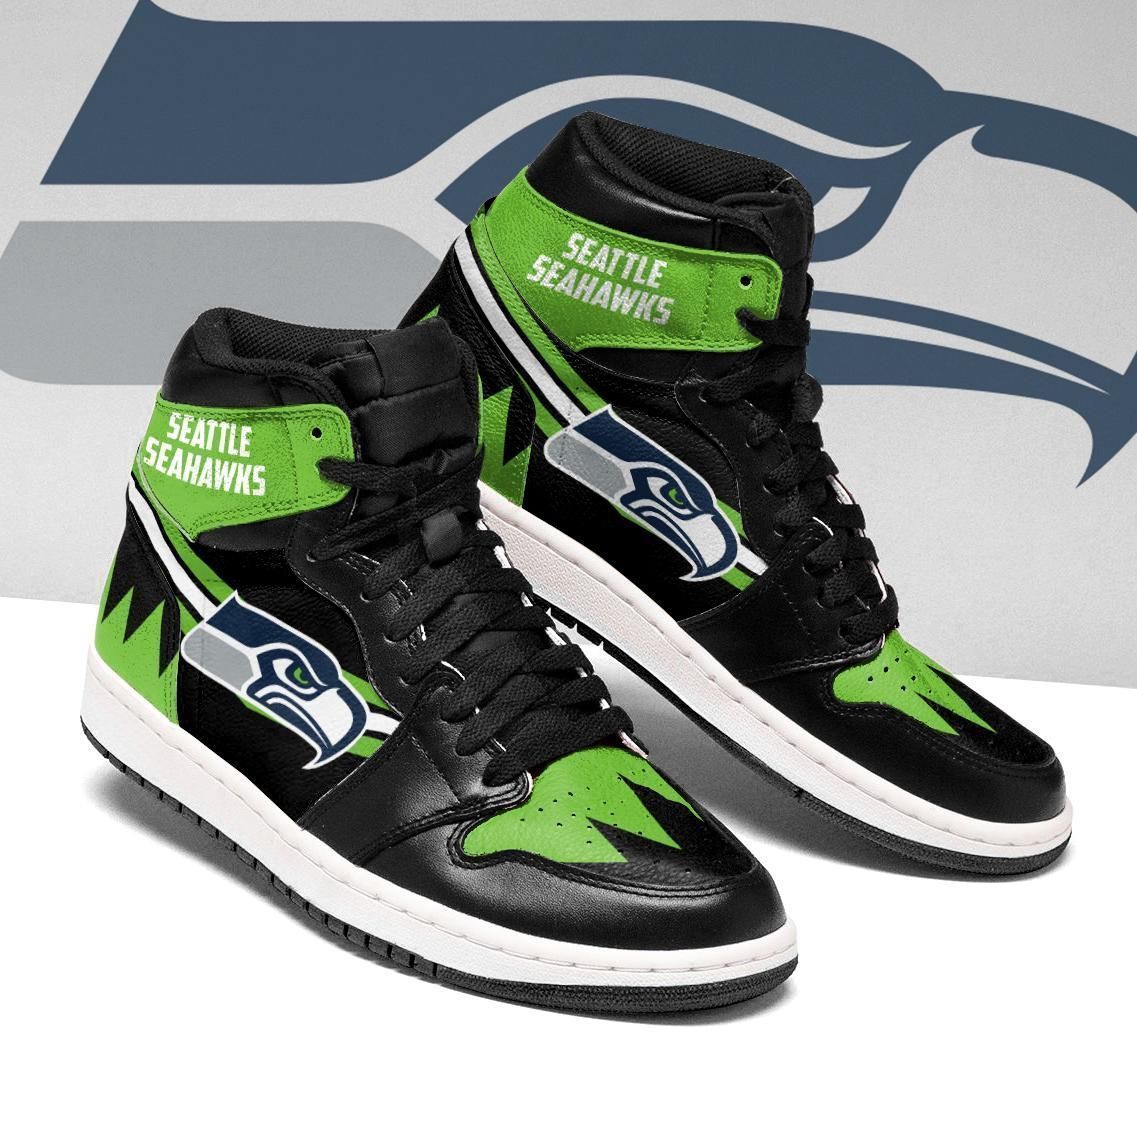 Seattle Seahawks team Custom Shoes Sneakers Great Gift For Fans-Gear Wanta